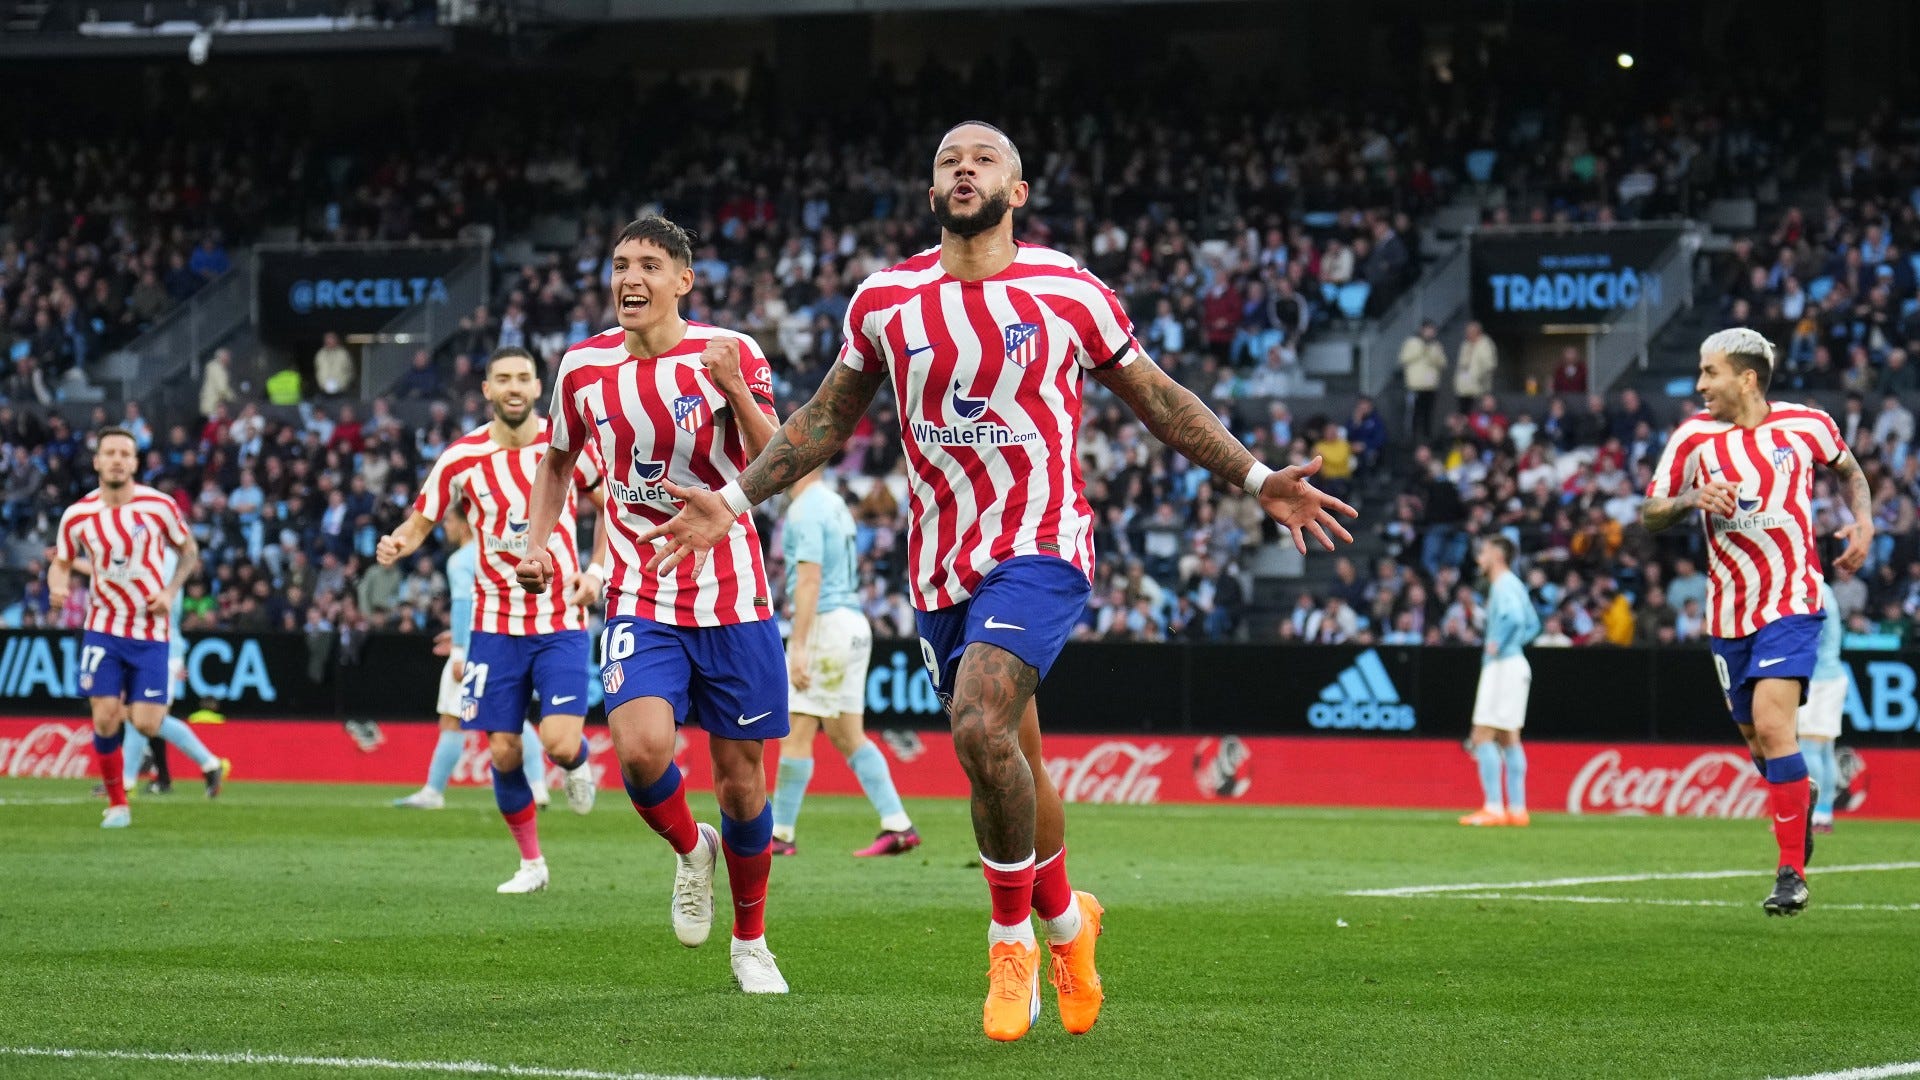 Link Trực Tiếp Bóng Đá Giữa Osasuna vs Atlético Madrid